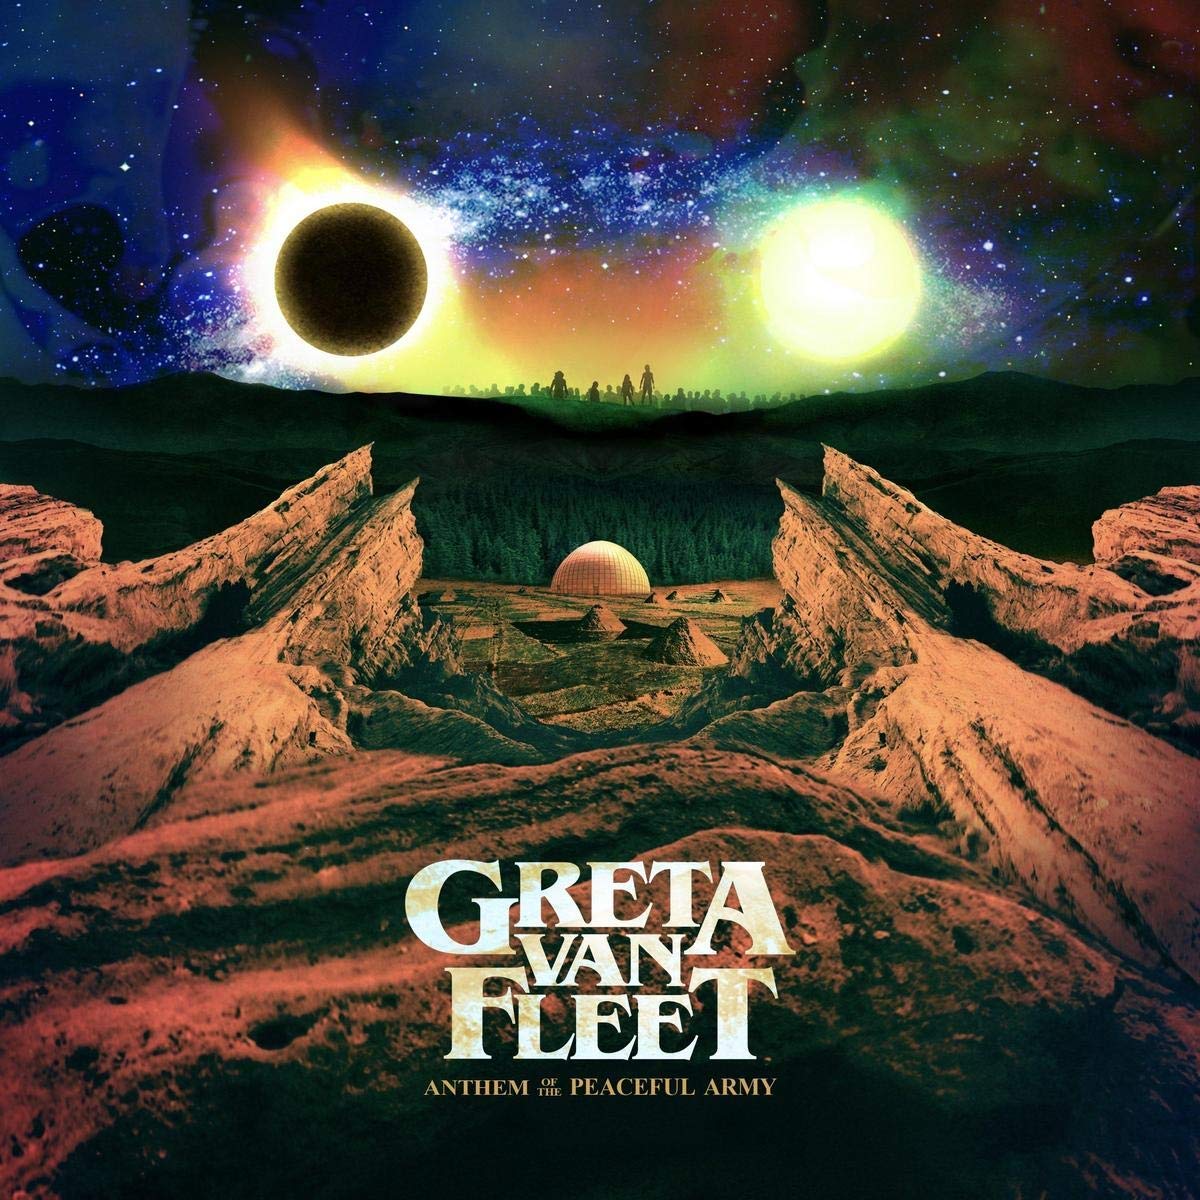 The Greta Van Fleet CD Giveaway!!!